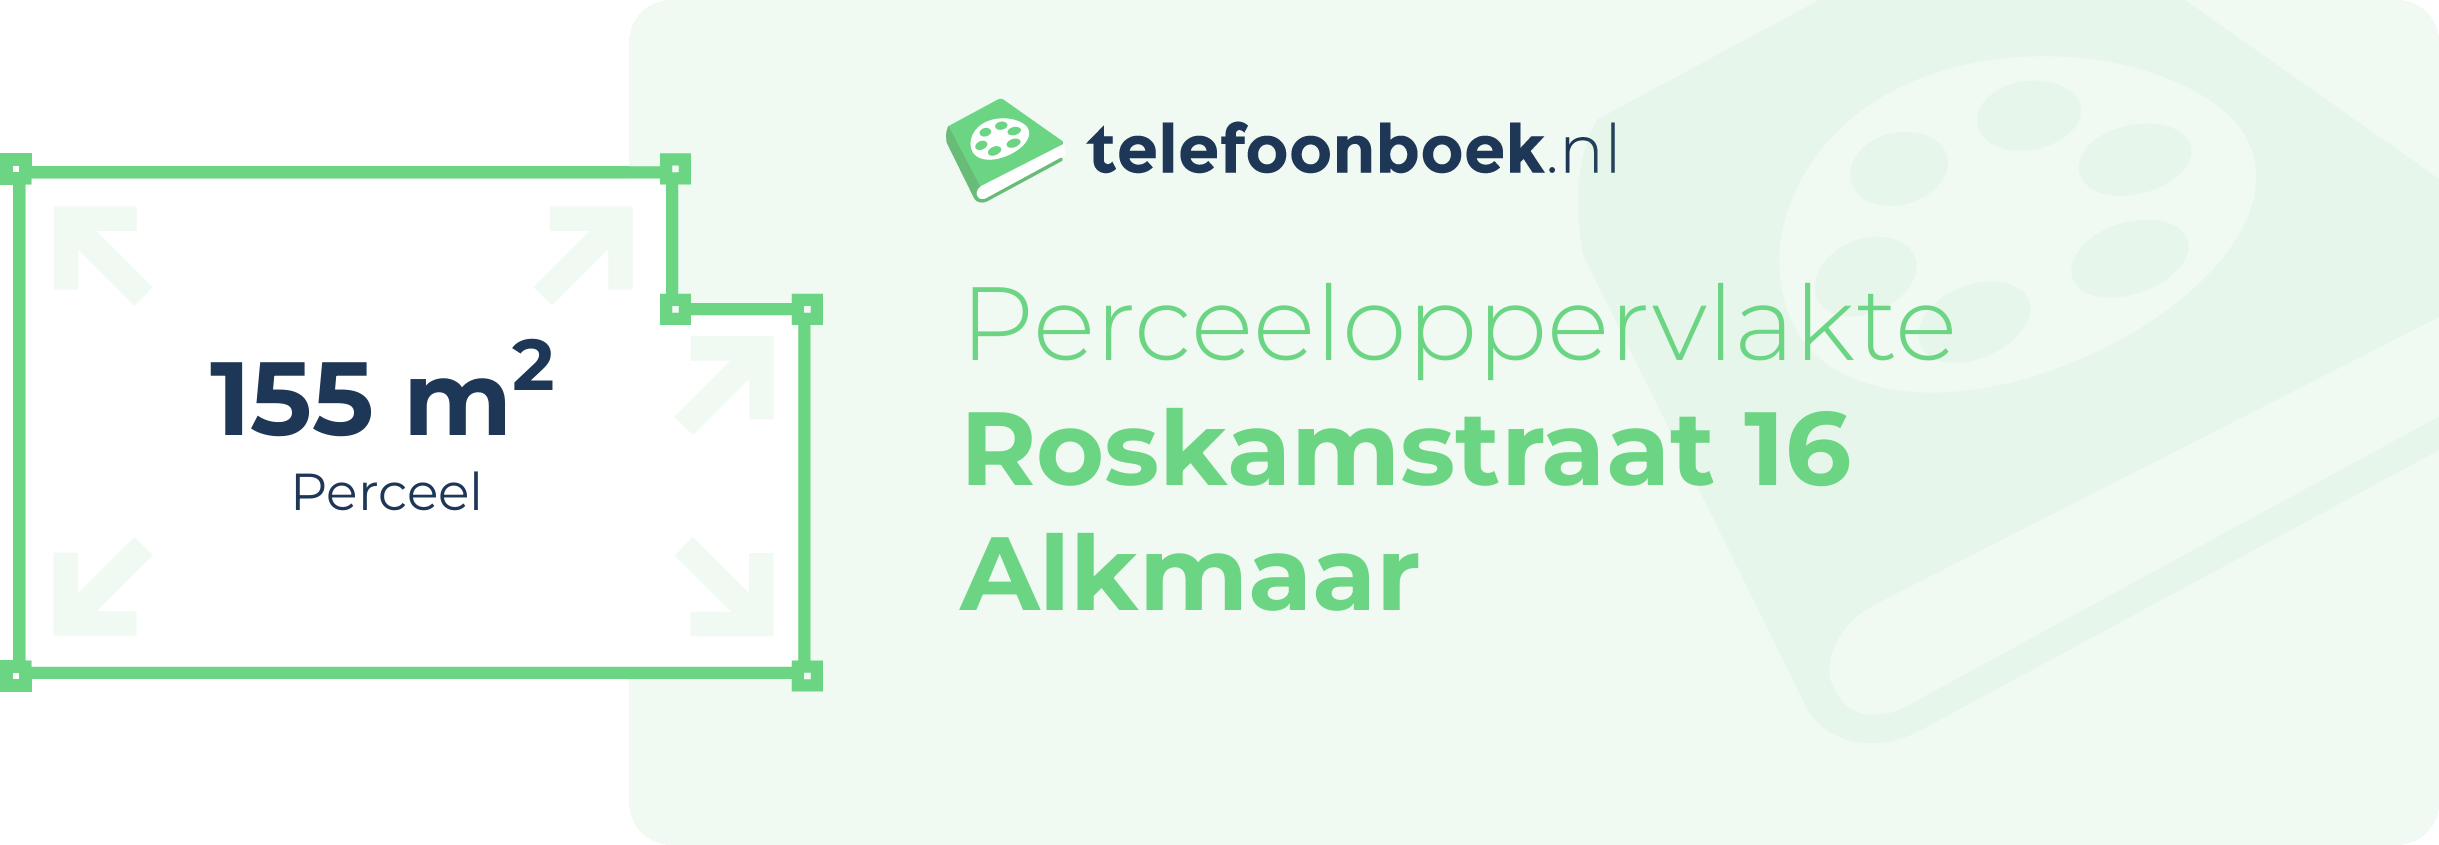 Perceeloppervlakte Roskamstraat 16 Alkmaar